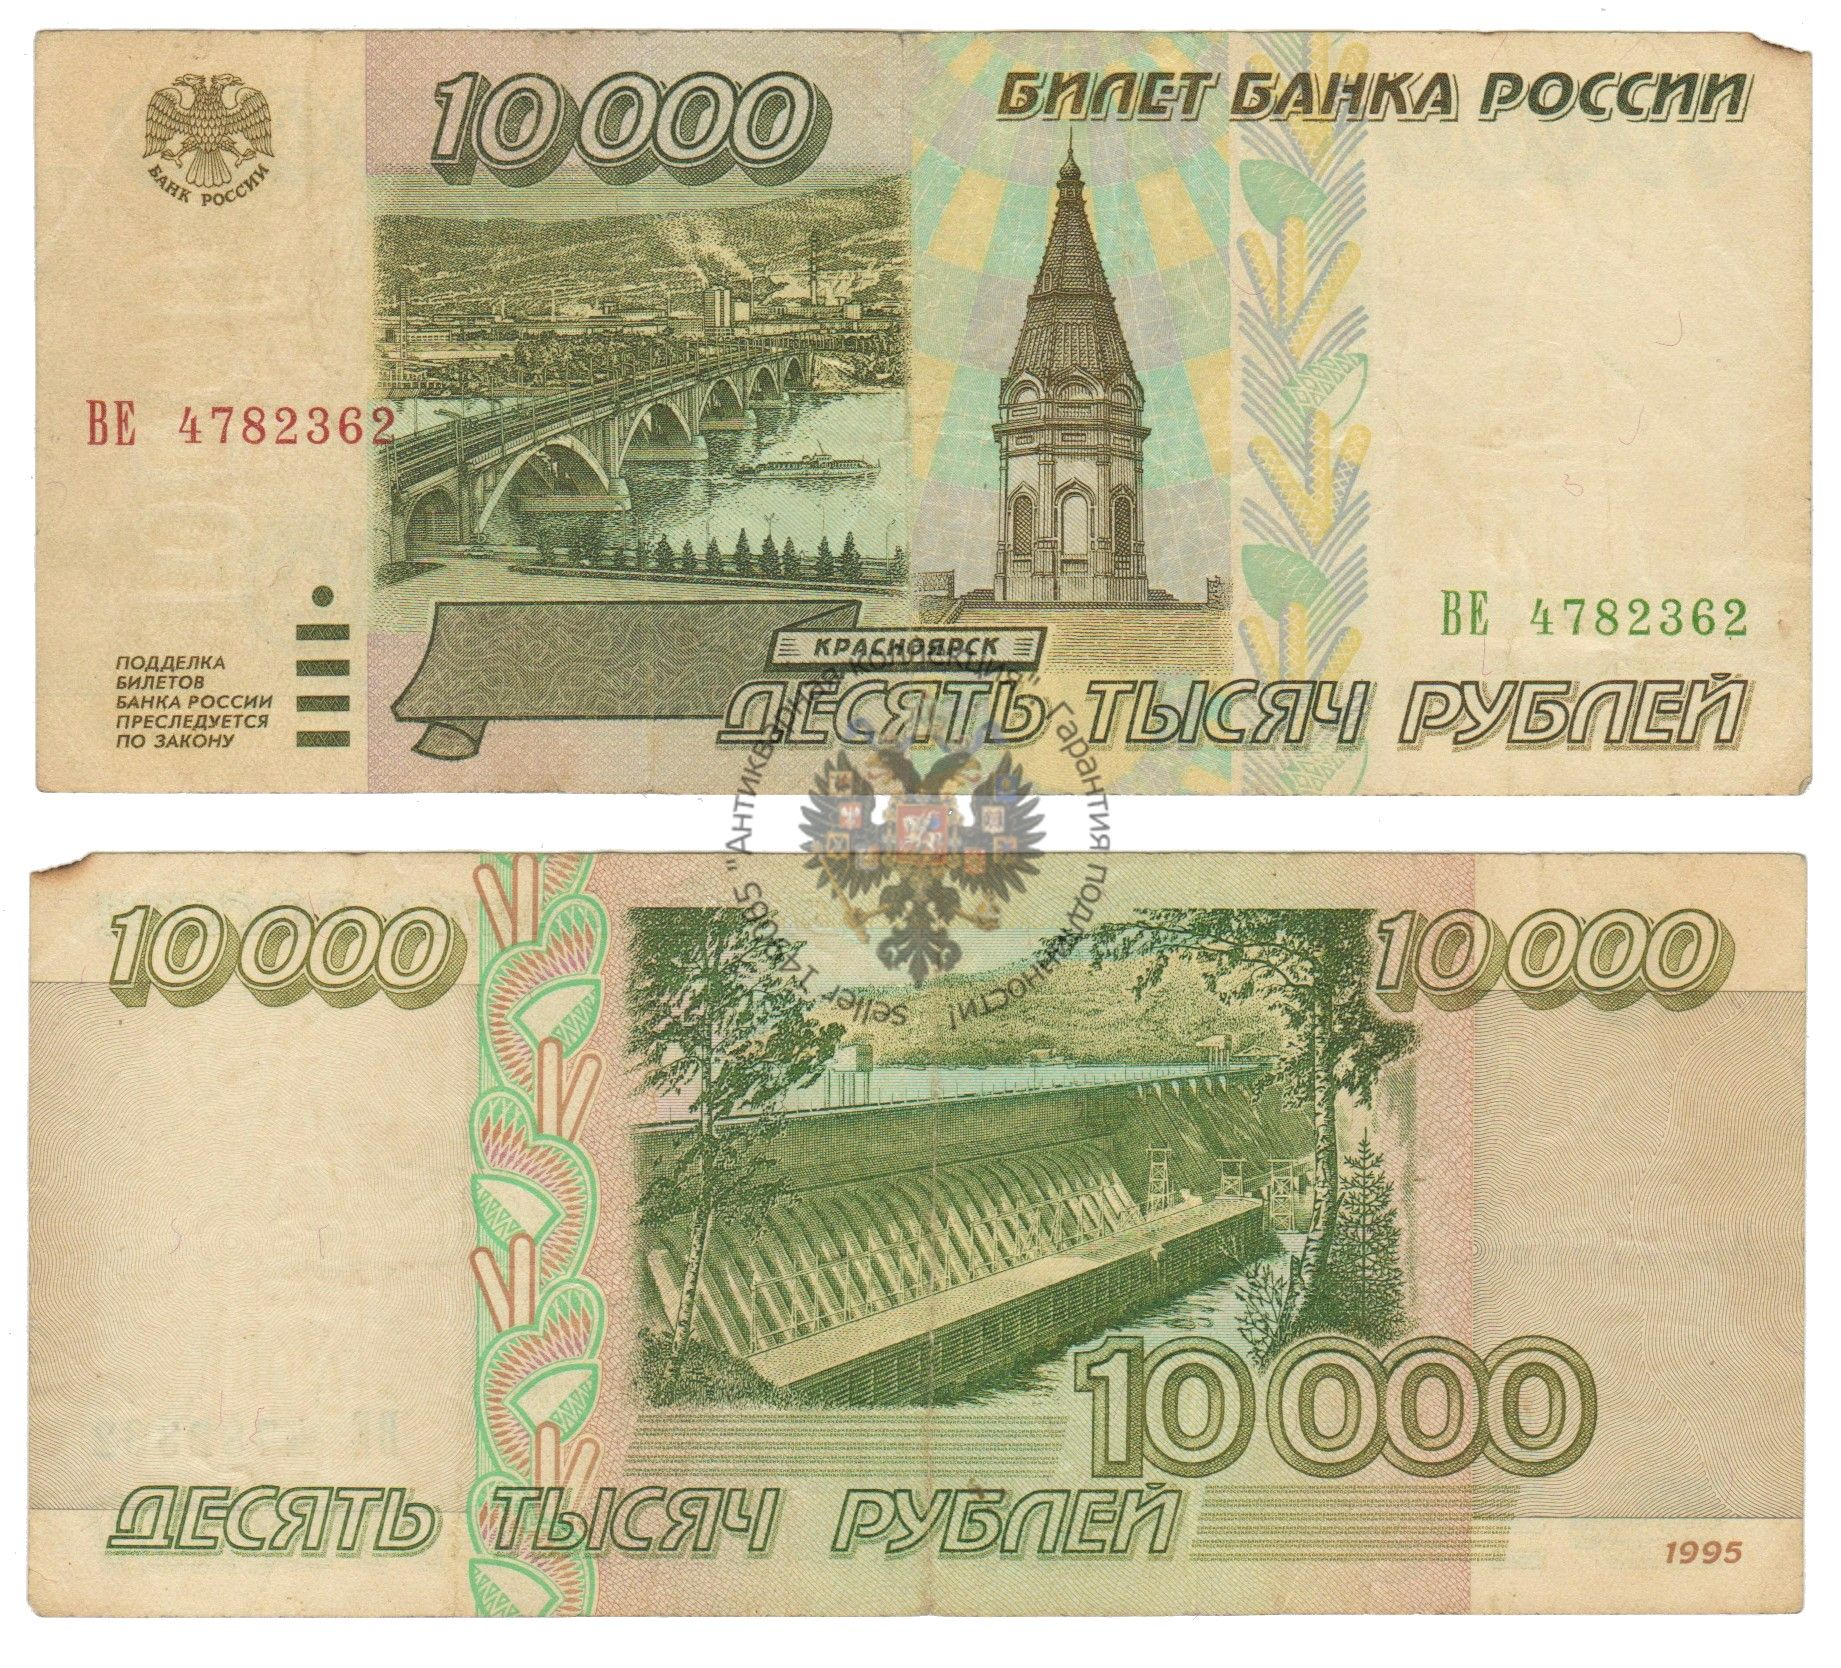 Купюра 10 тыс. 10000 Рублей купюра 1995. Банкноты банка России 1995 года. Купюра 10000 рублей 1995 года. 10000 Рублей России банкнота.